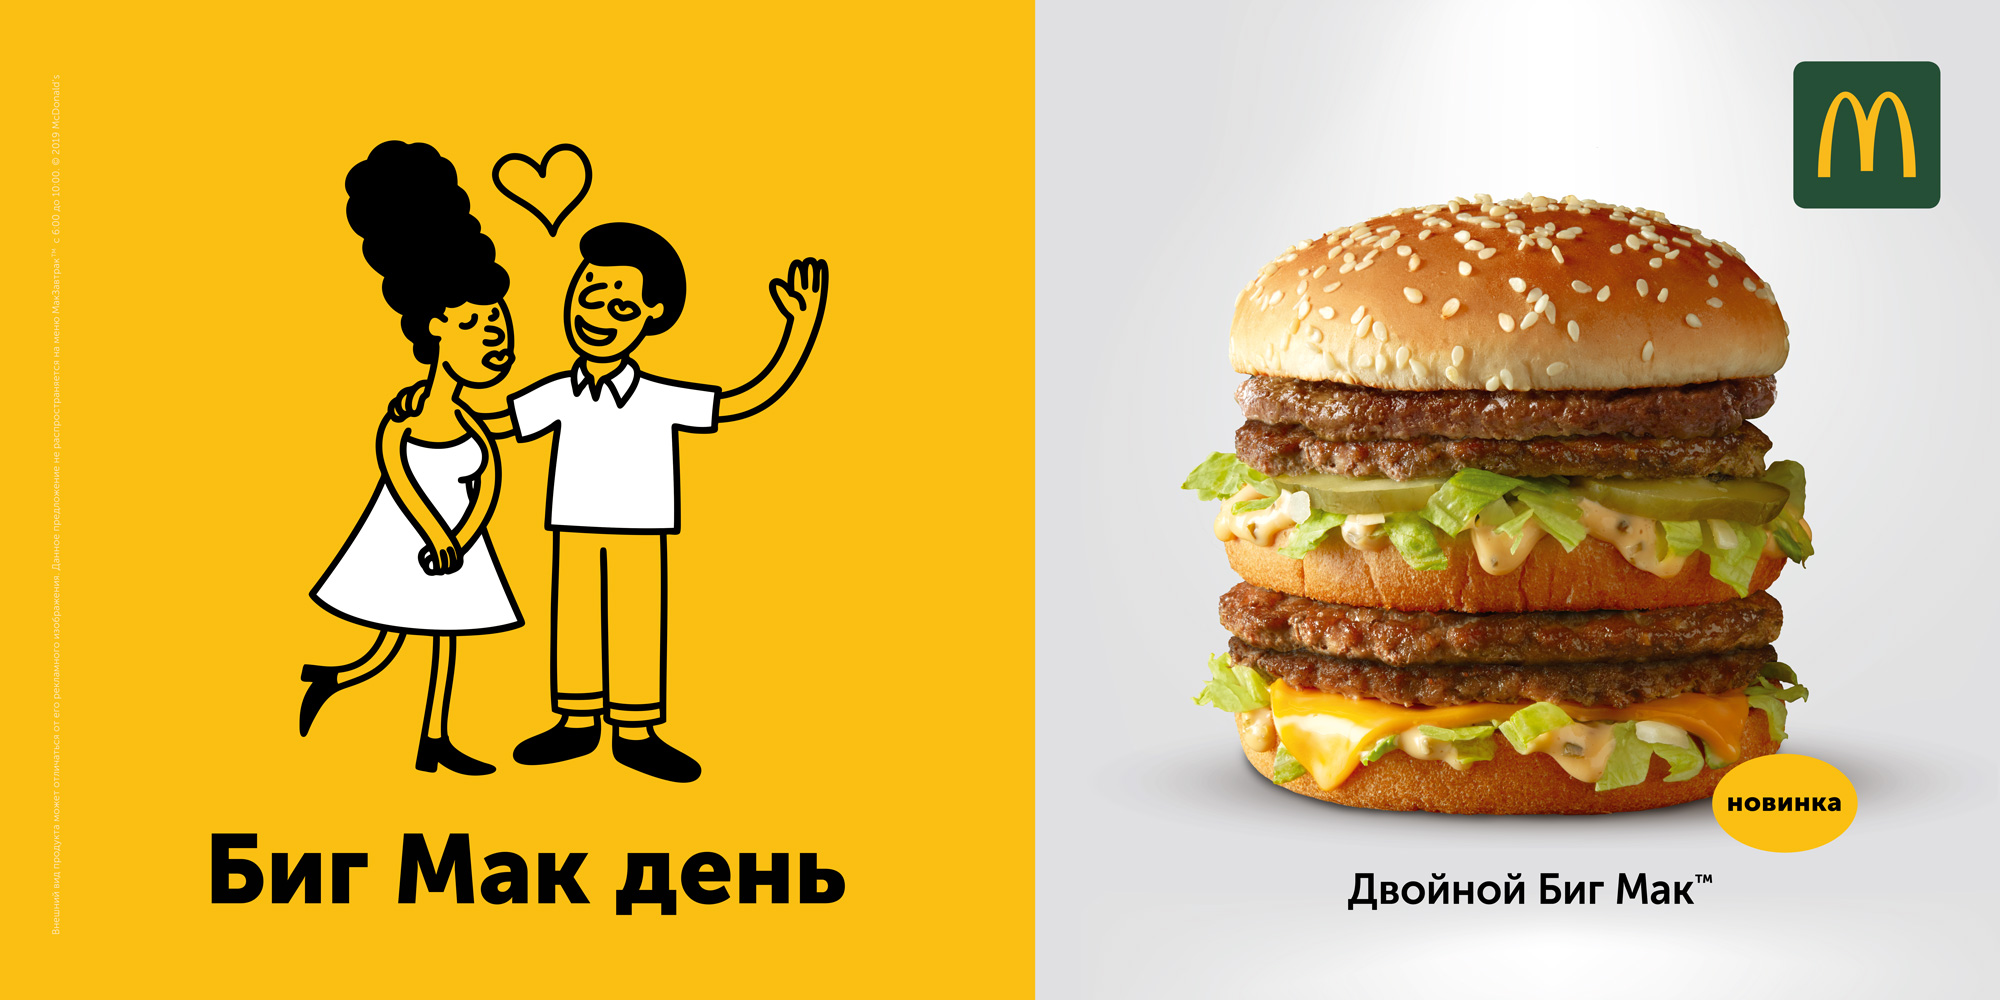 Рекламная кампания, Биг Мак, McDonald’s, Ambition DDB